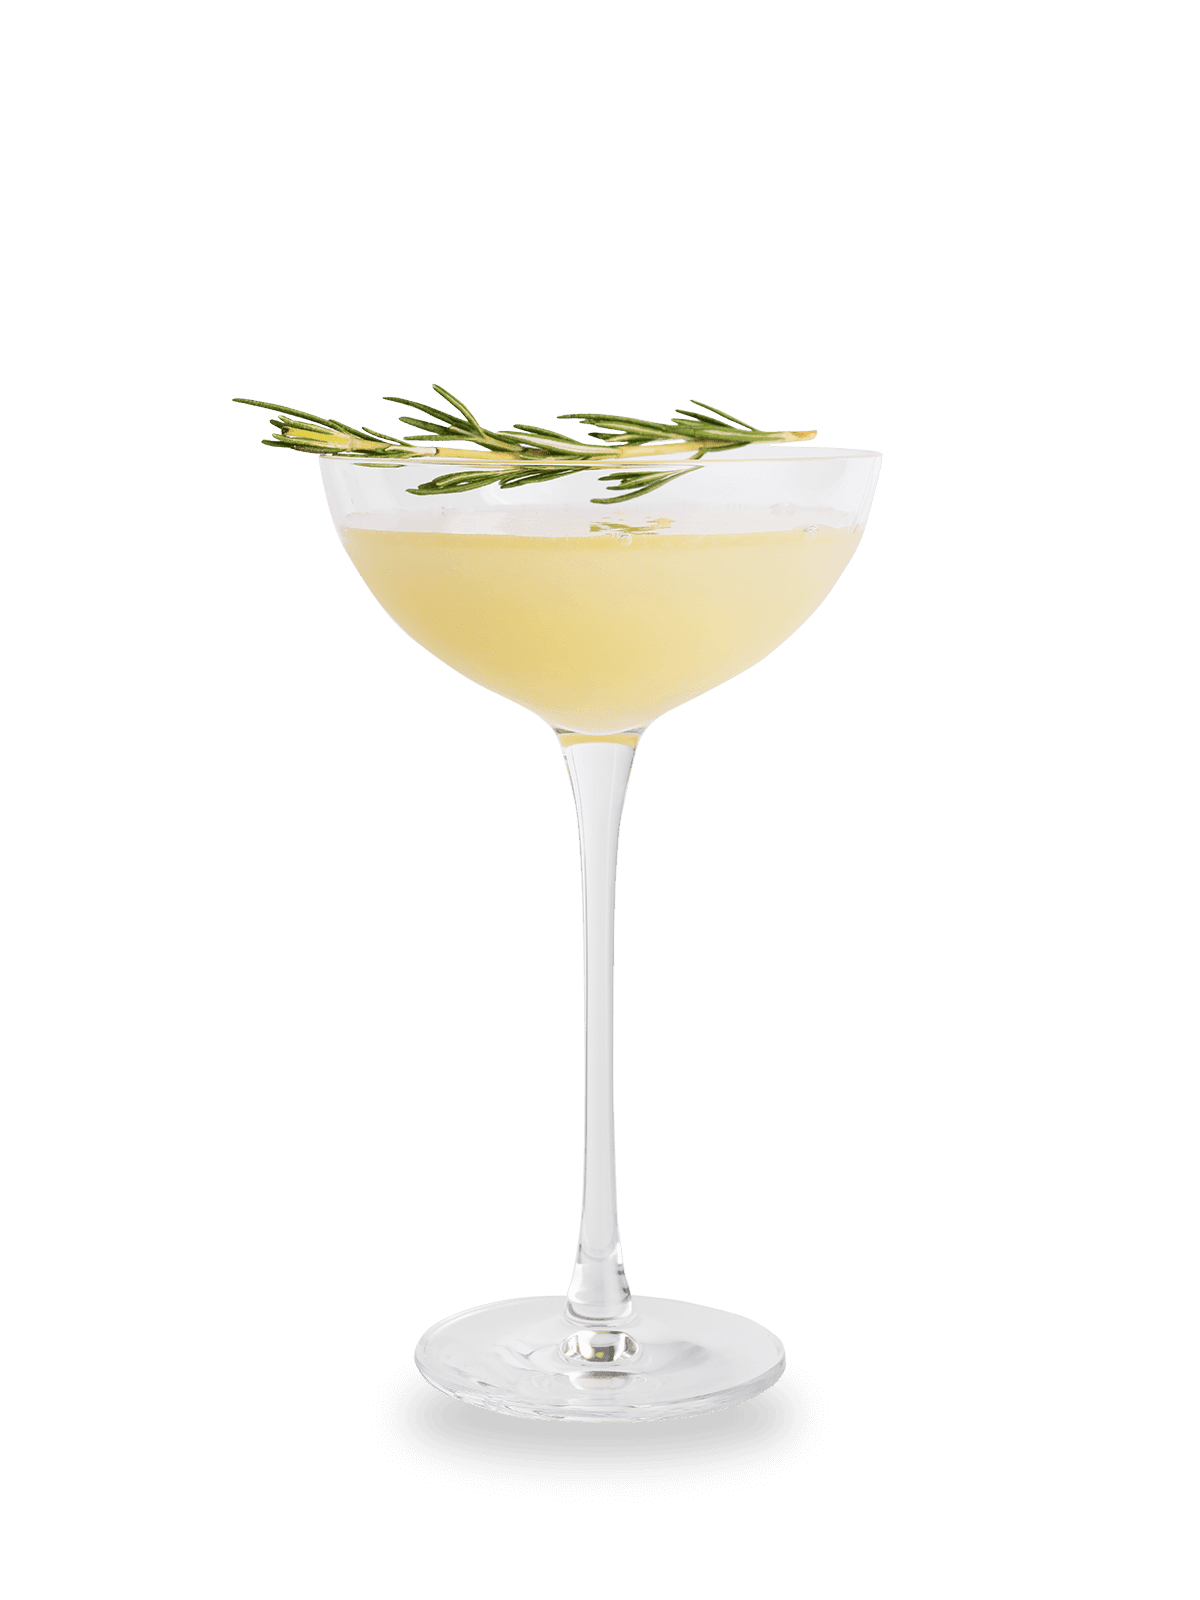 Öl - ein Cocktail Rezept mit Gin und Olivenöl